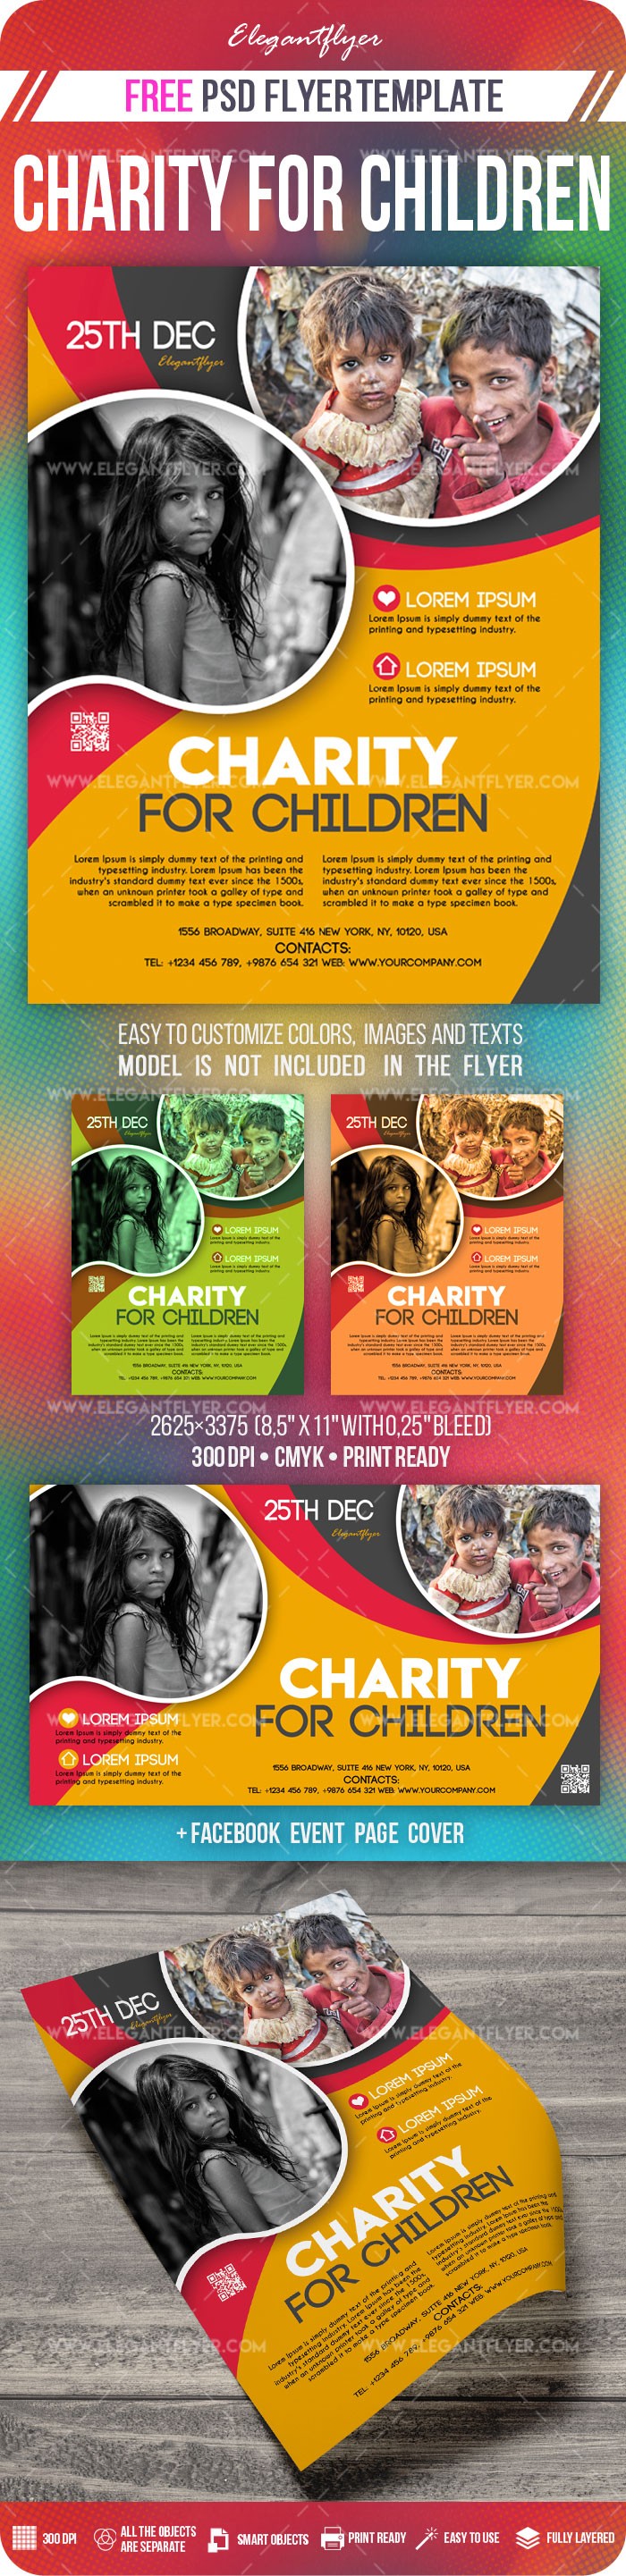 Charity for children by ElegantFlyer